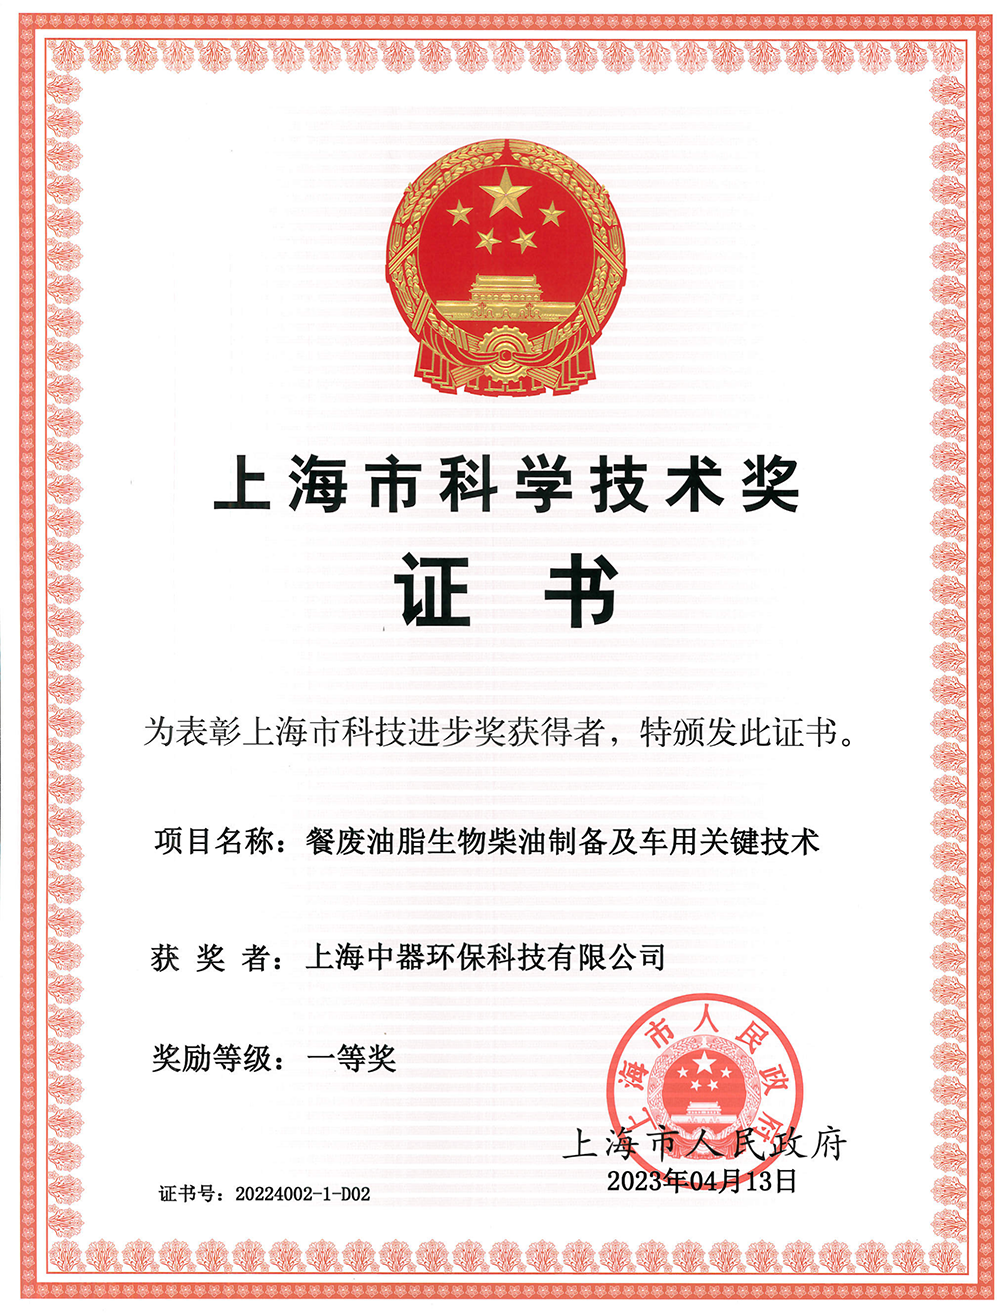 
上海市科技进步奖“一等奖”